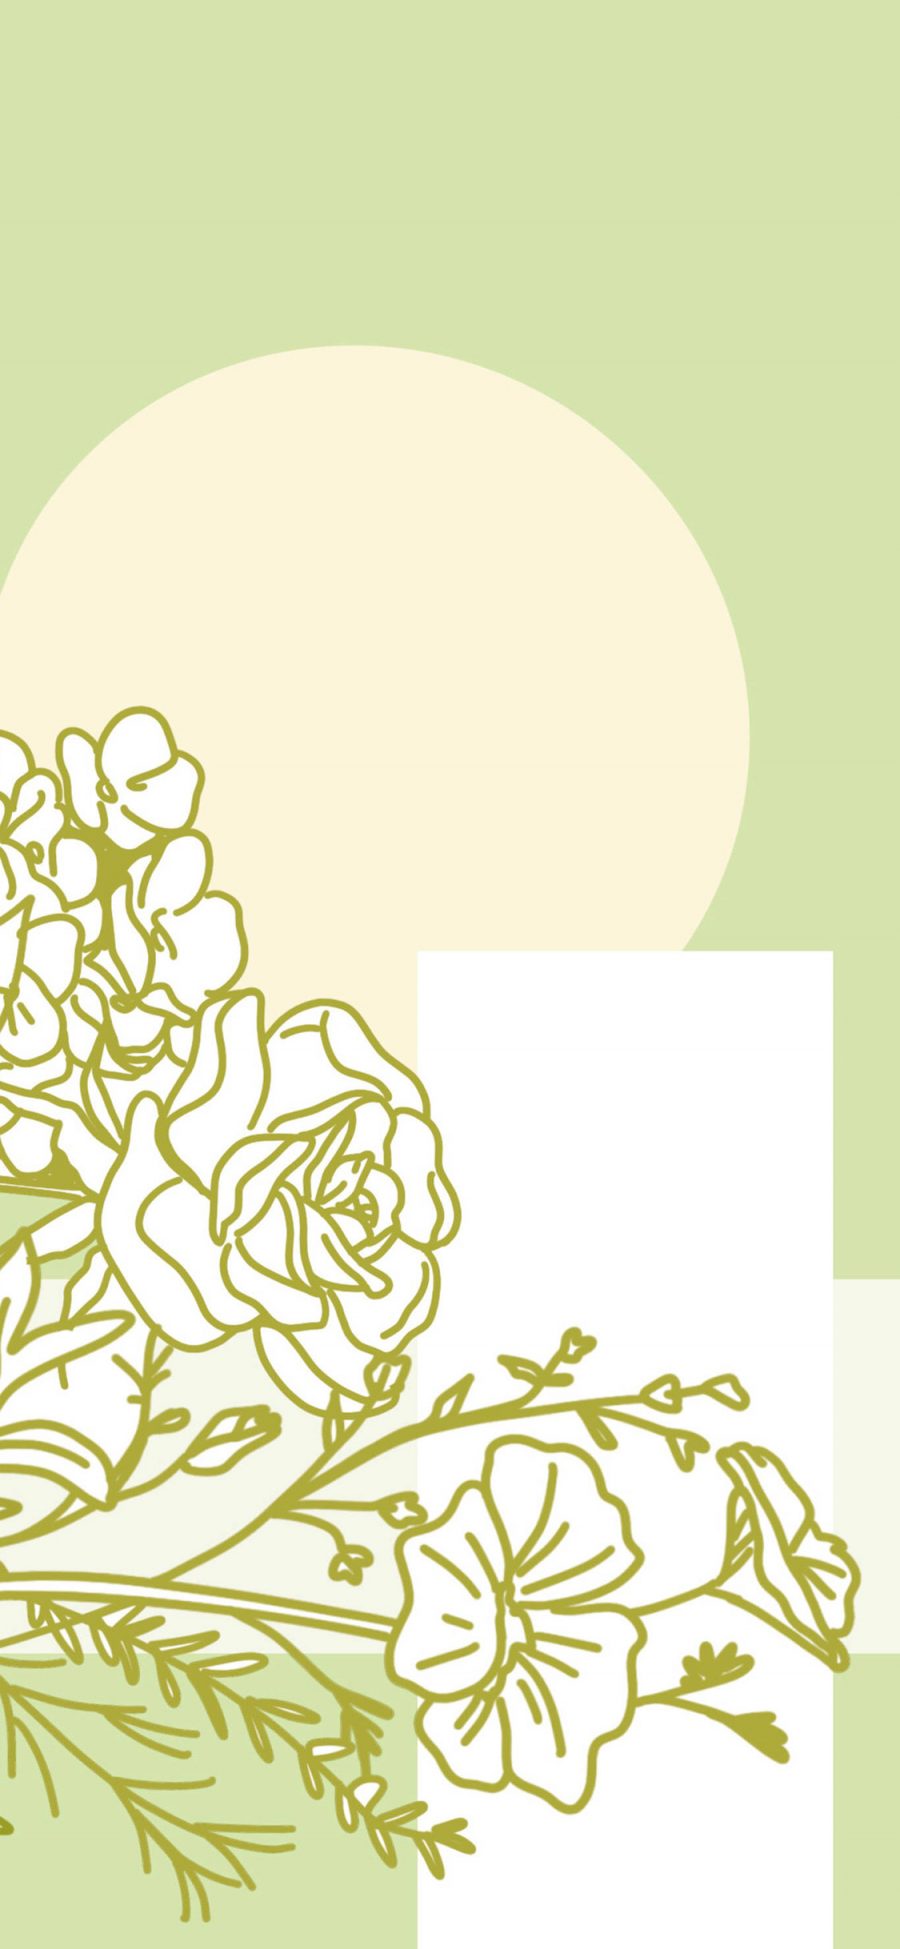 [2436×1125]插图 花朵 线条 简约 绿色 苹果手机动漫壁纸图片